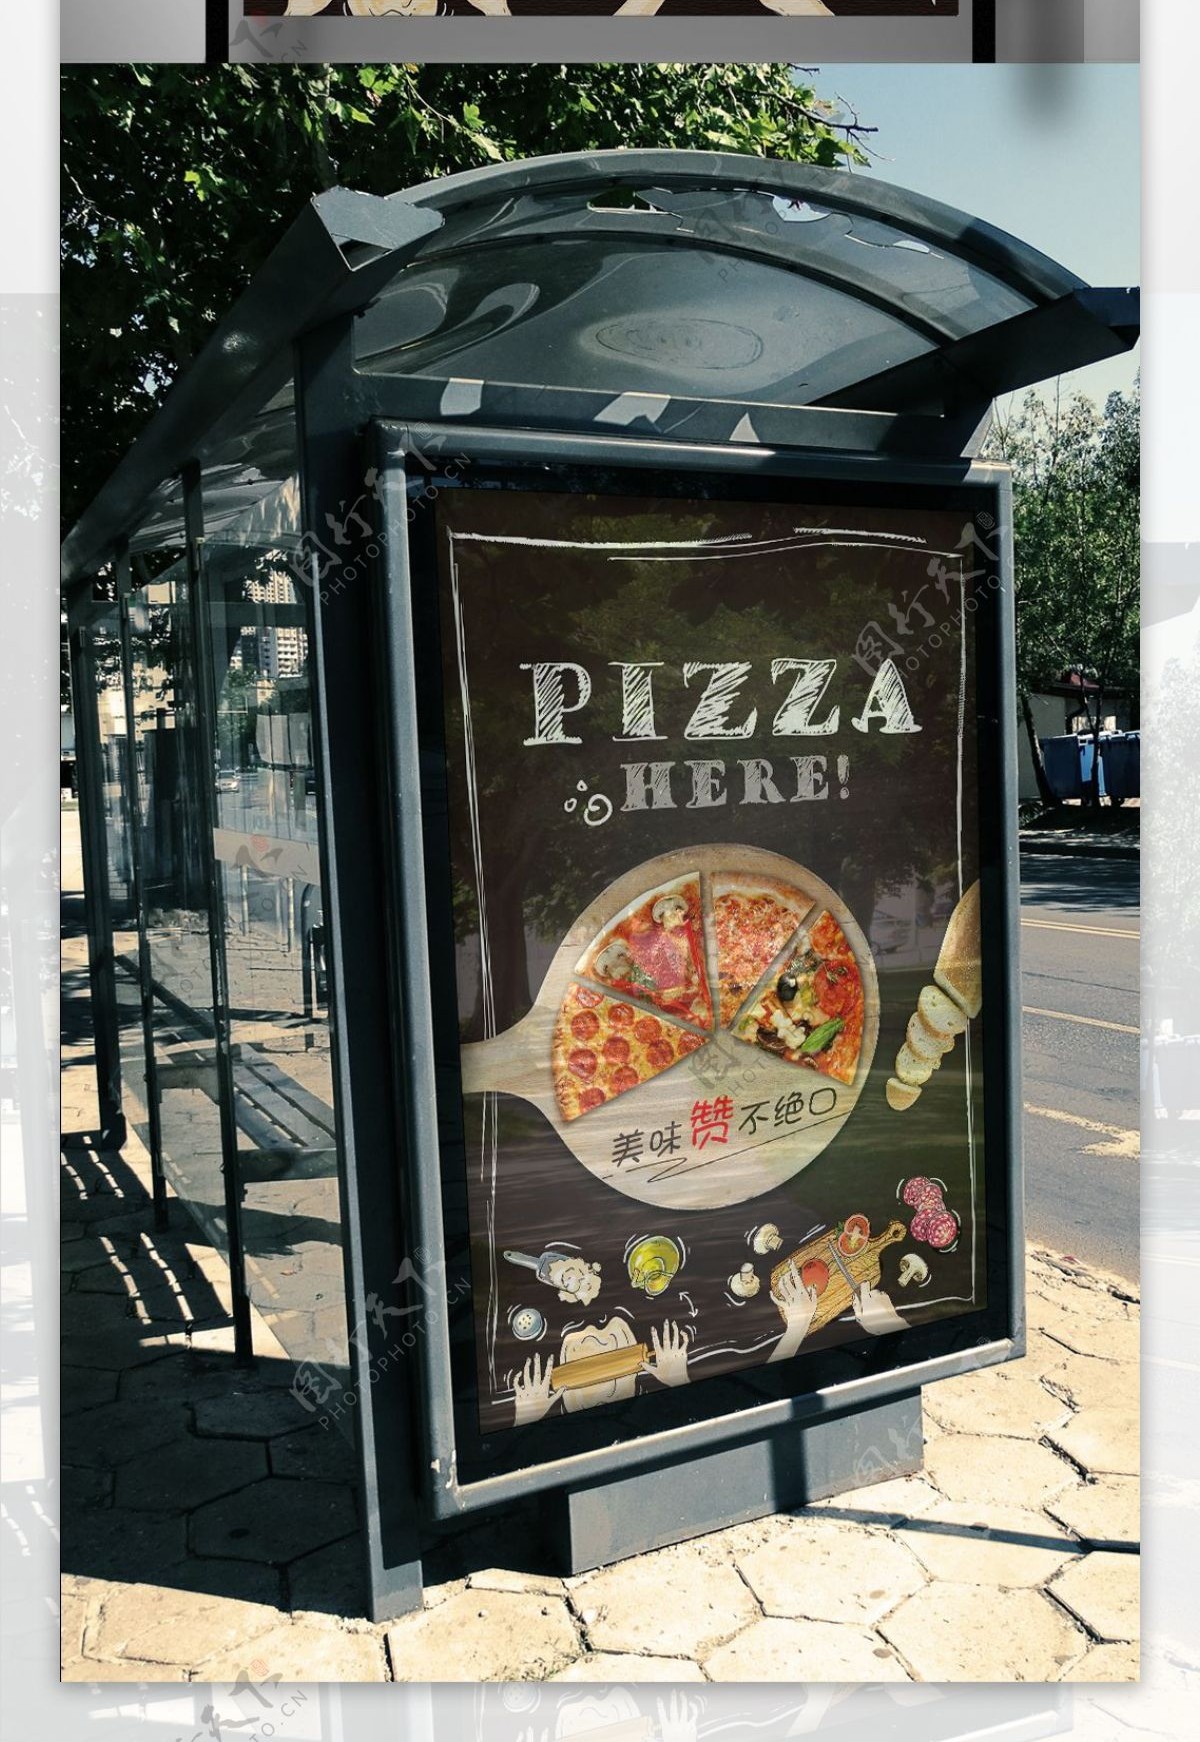 西餐厅必胜客披萨新品上市促销宣传海报